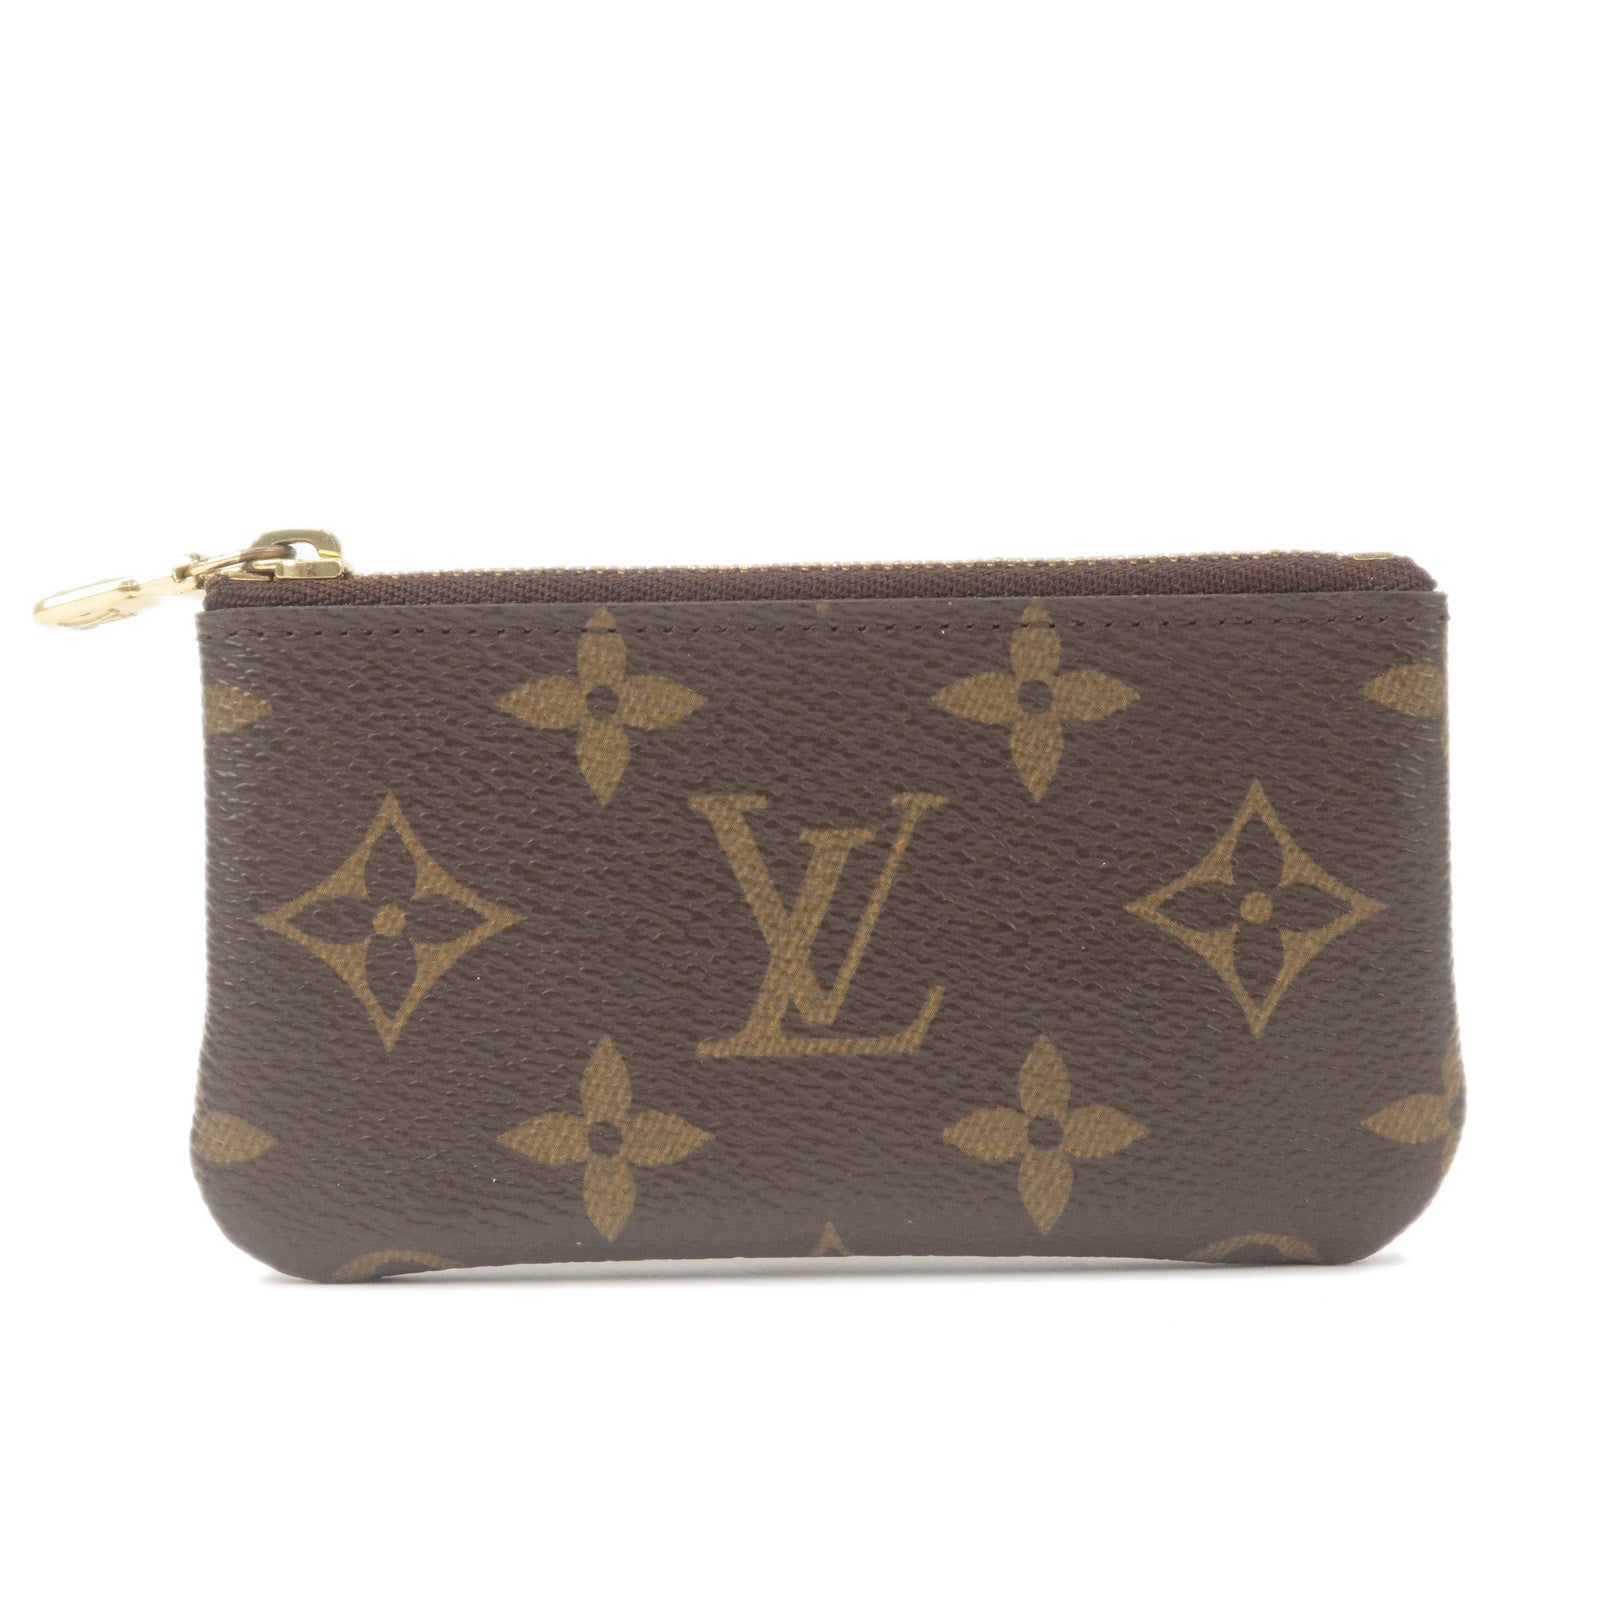 Case - Monogram - Cles - Louis - Key - ep_vintage luxury Store - Vuitton -  Pochette - Case - Coin - Louis Vuitton Men Wallets - M62650 – dct